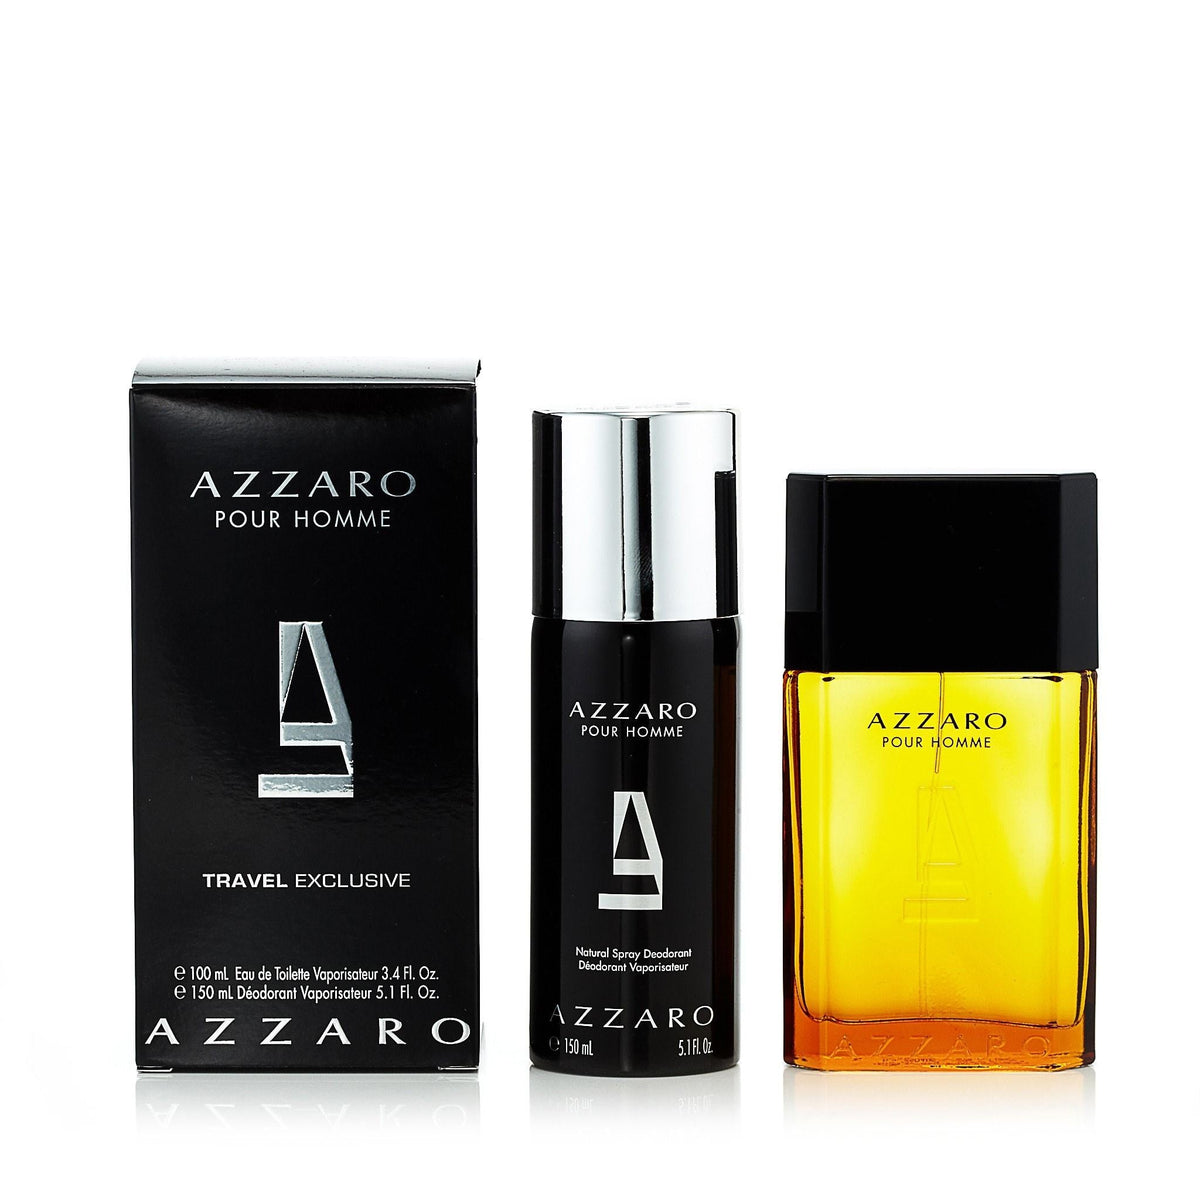 Azzaro Gift Set for Men by Azzaro 3.4 oz.